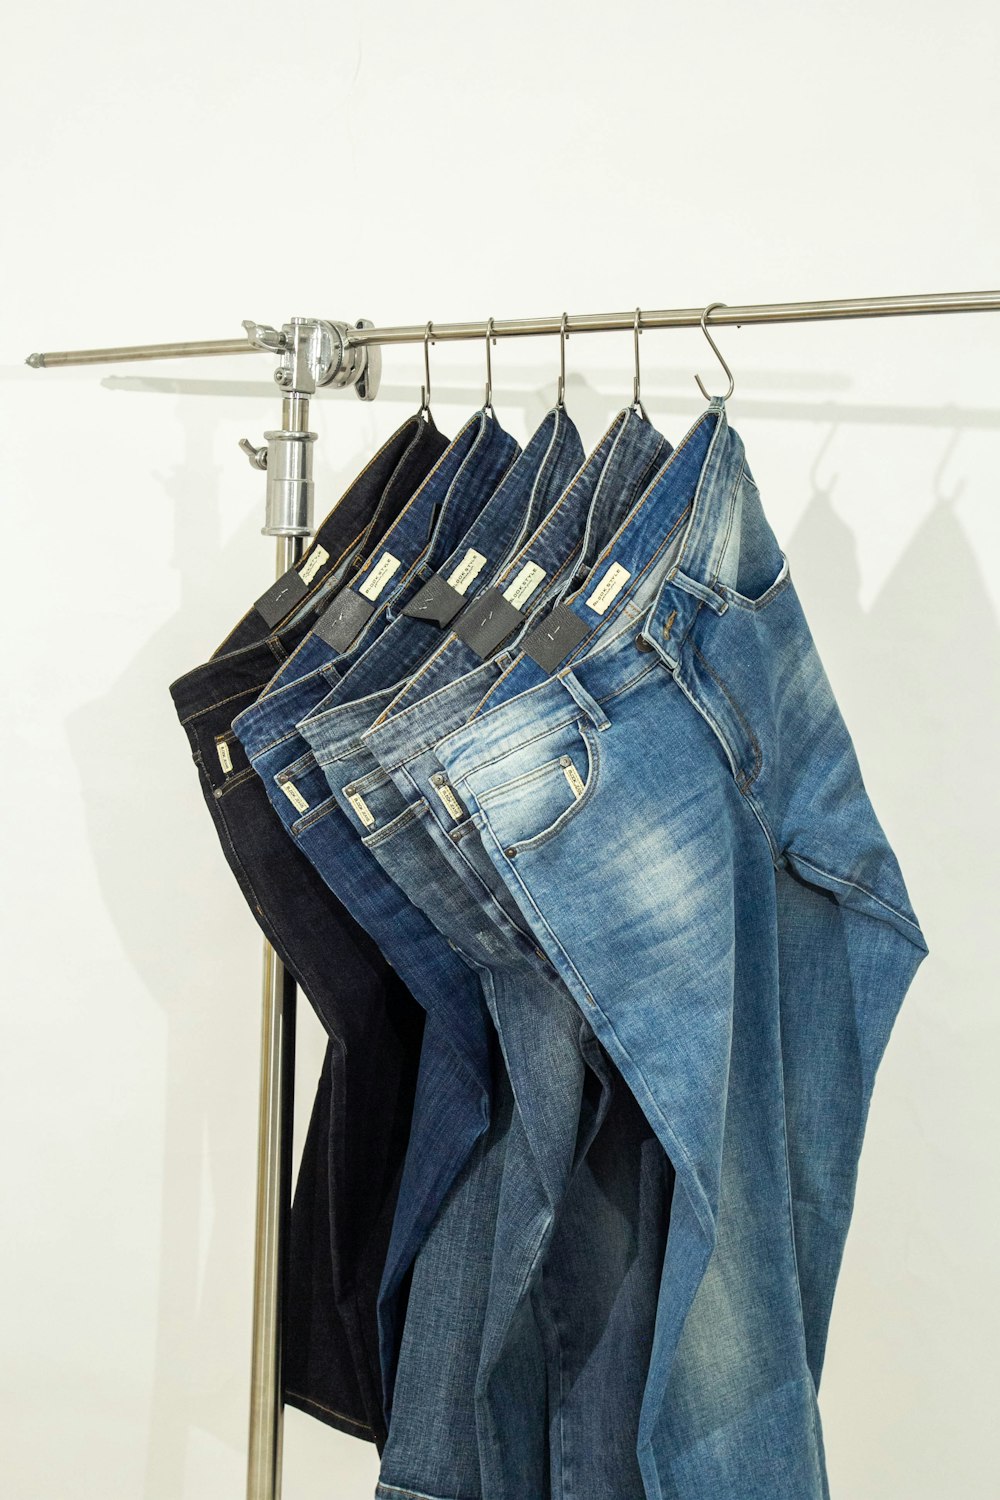 Cinq paires de jeans accrochées à un portant